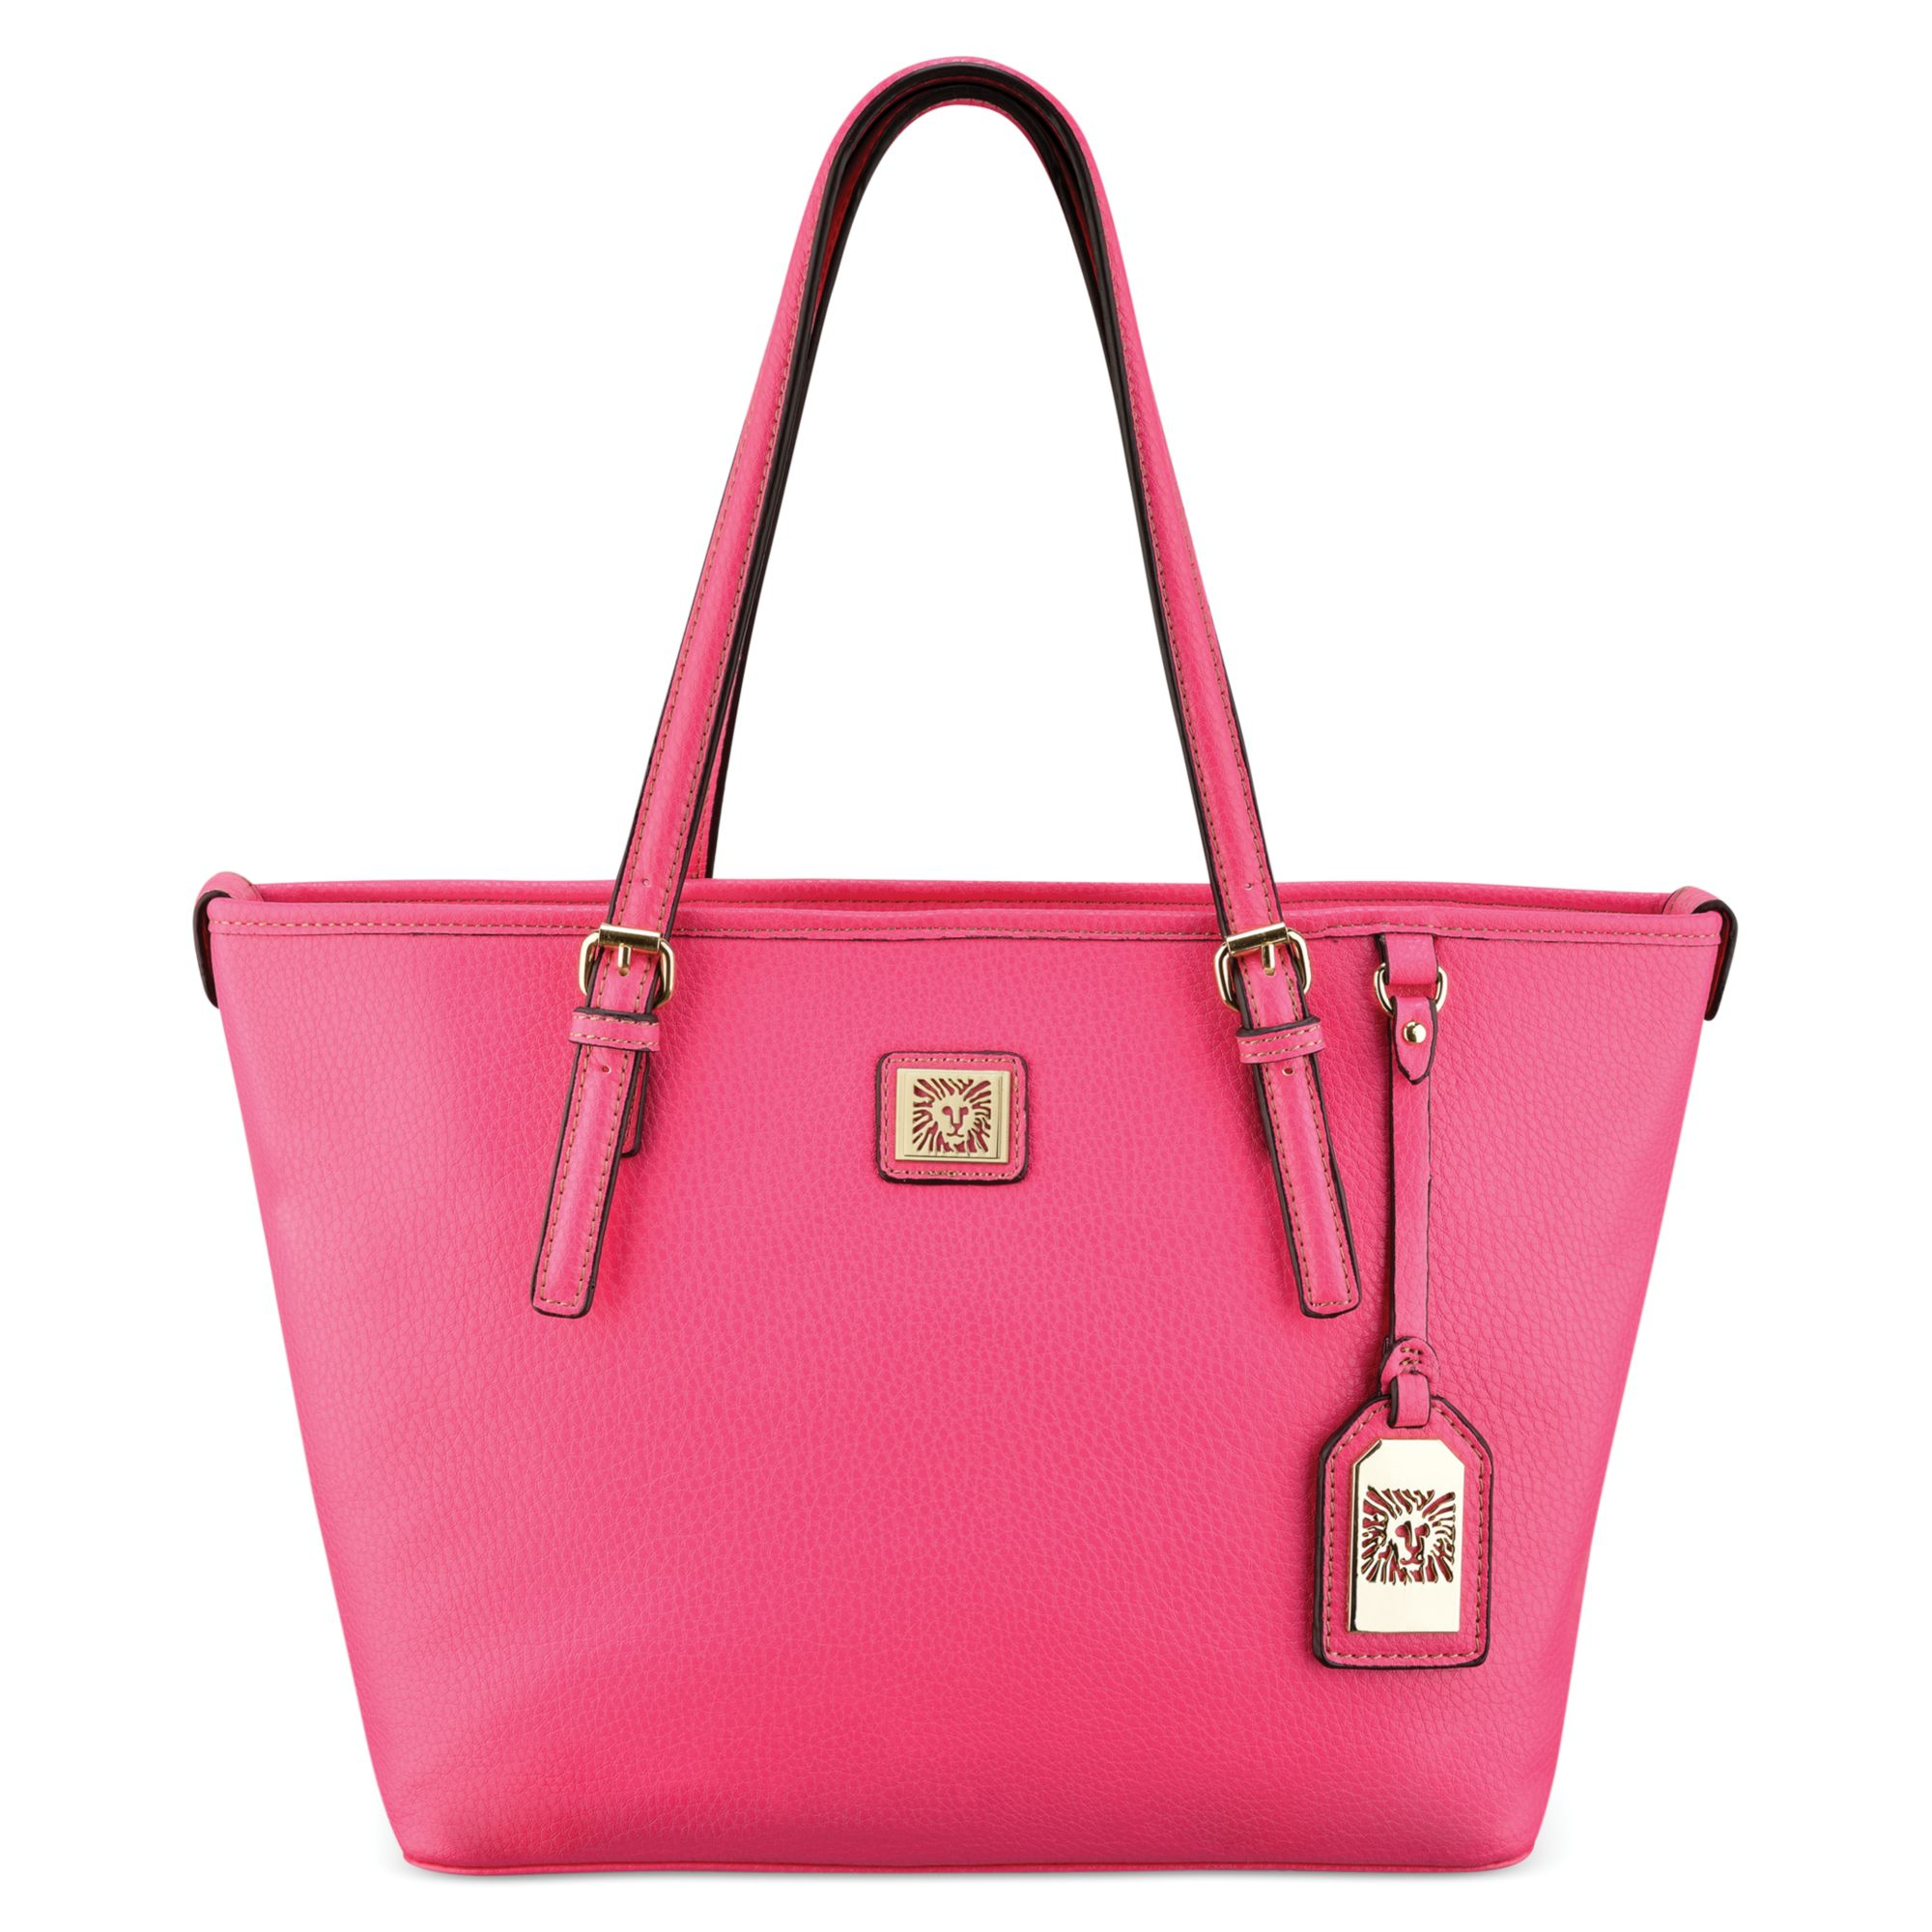 Klein Handbags For Women | semashow.com